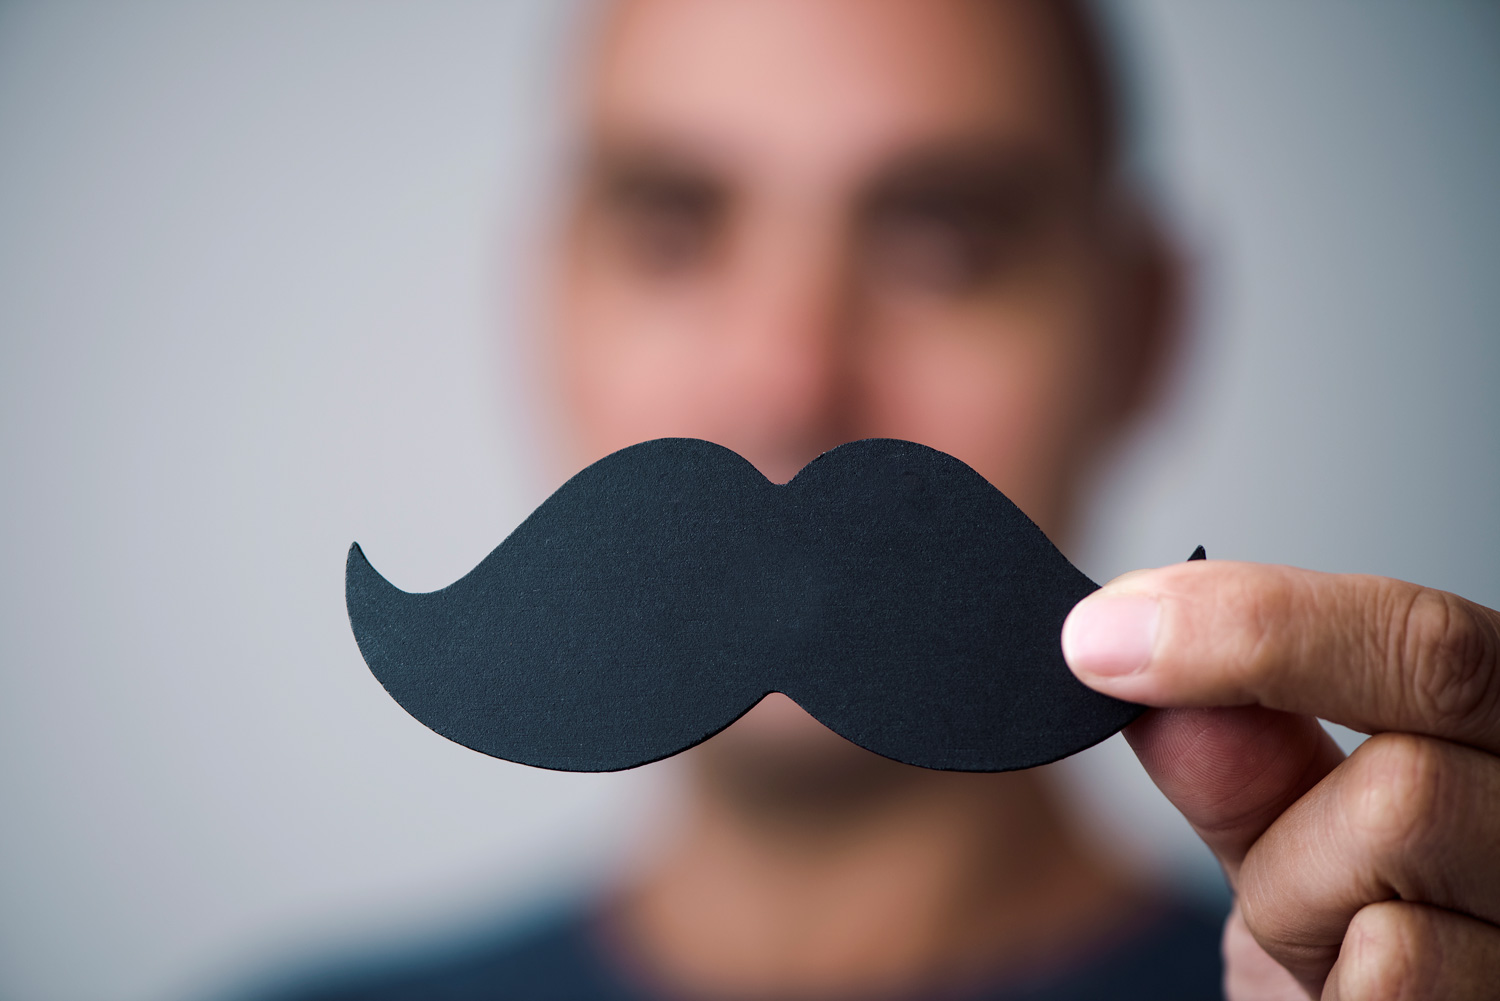 Erfolgreiche Movember-Spendenaktion für Männergesundheit